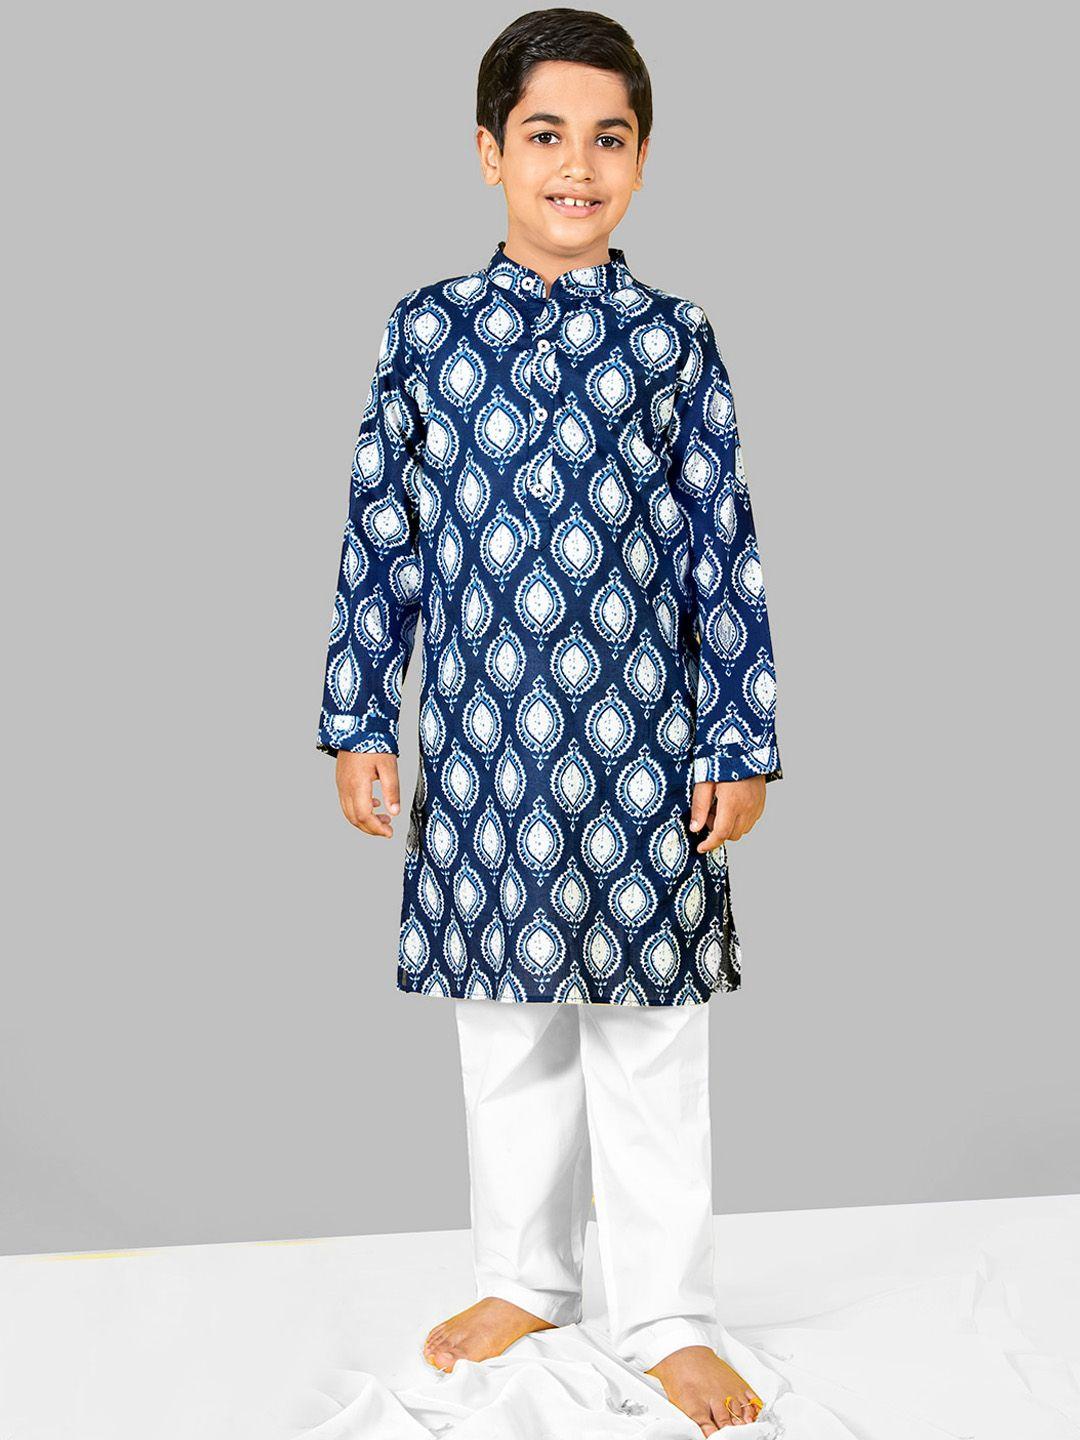 naughty-ninos-boys-ethnic-motifs-printed-kurta-with-pyjamas